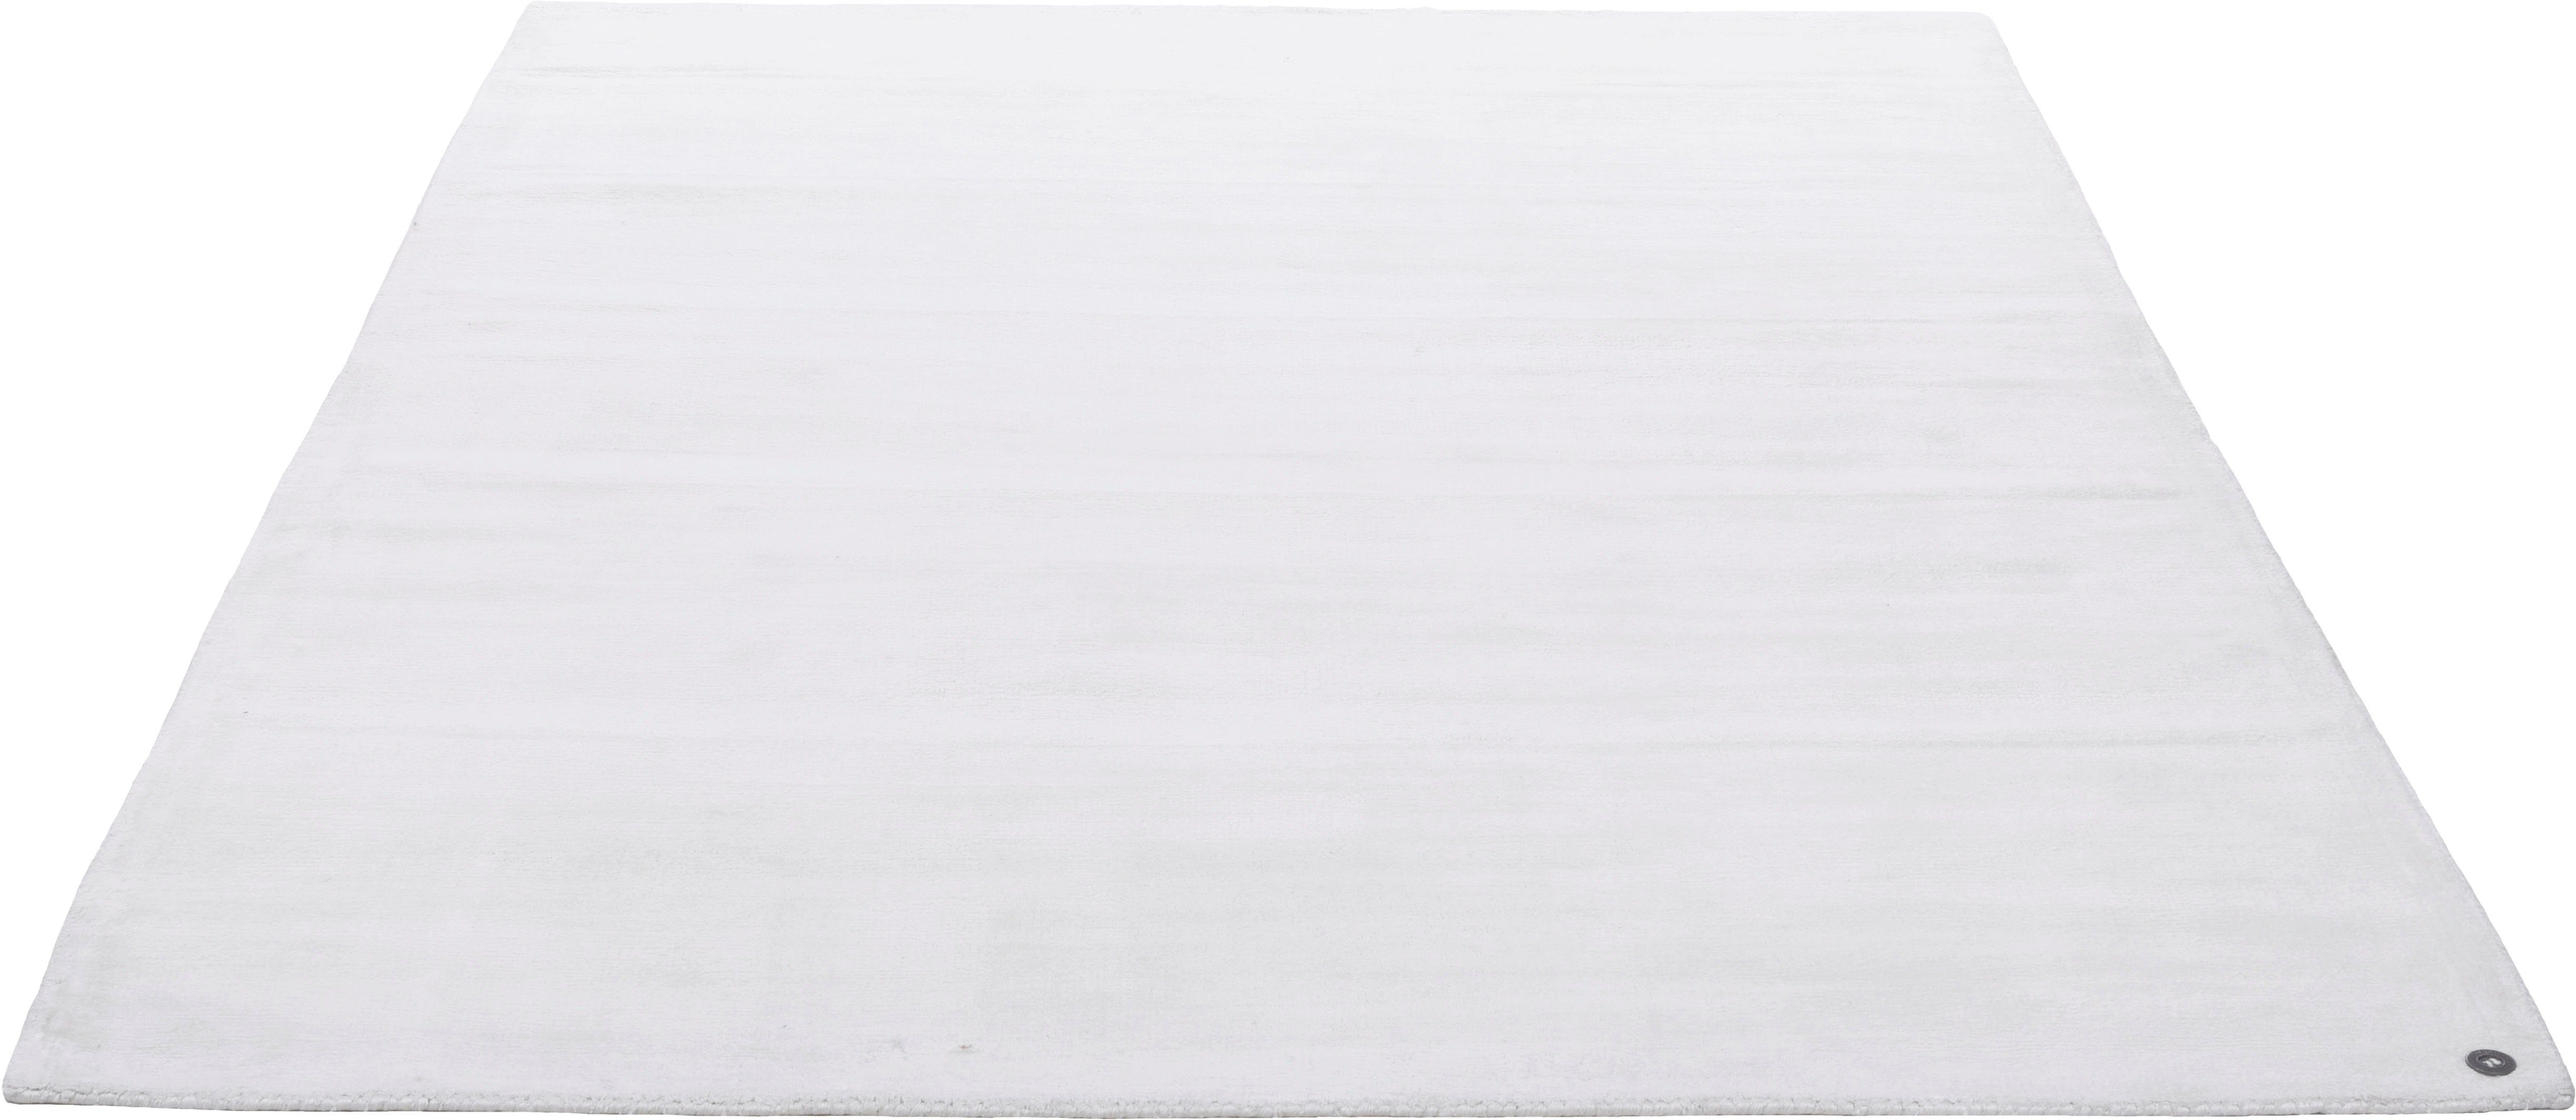 Teppich »Shine uni«, TOM TAILOR, rechteckig, Höhe 8 mm, Handweb Teppich, 100% Viskose, handgewebt, mit elegantem Schimmer, Wohnzimmer-Otto